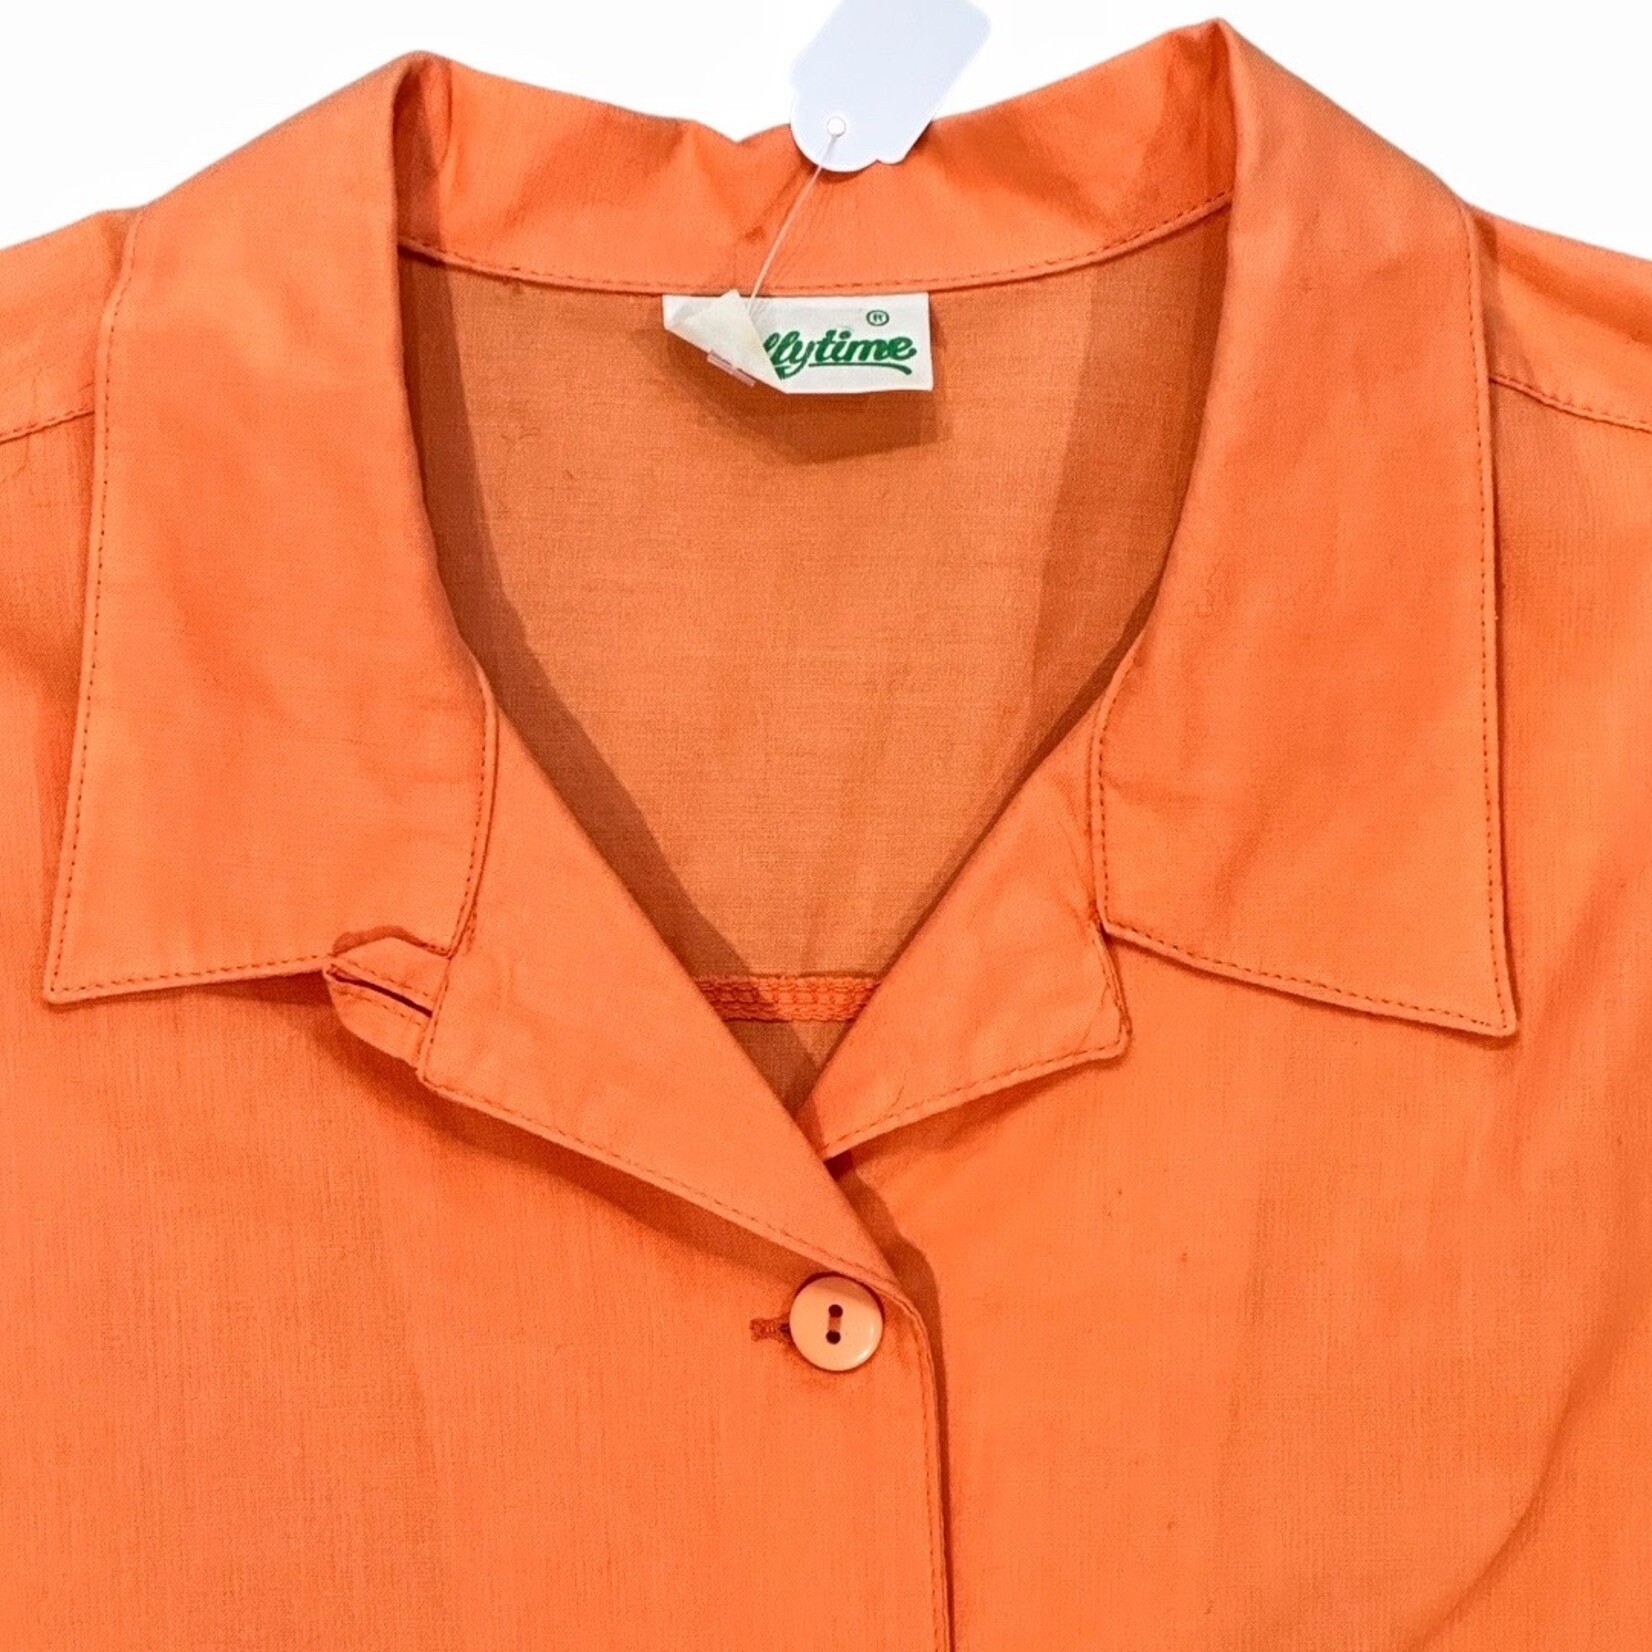 Vintage Vintage blouse pastel orange size M/L